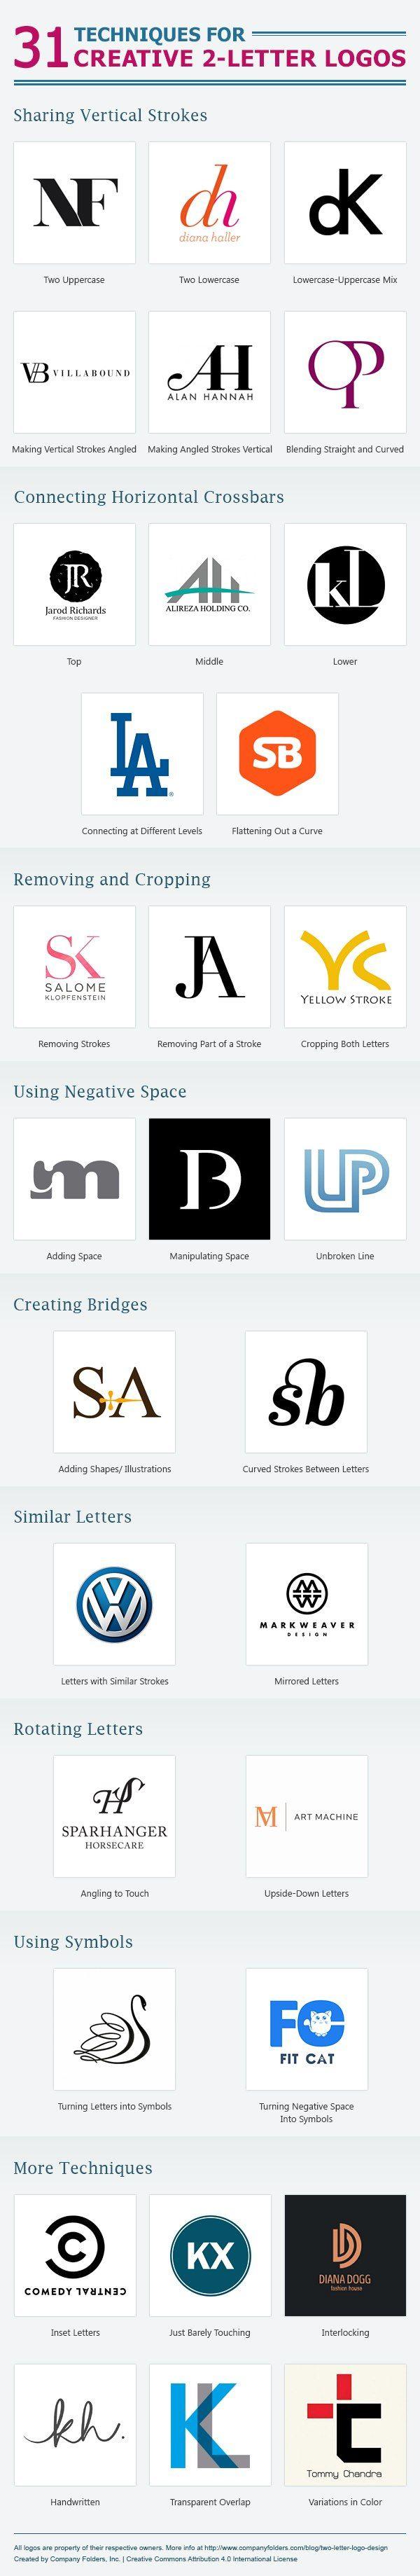 3 Letter Brand Logo - The Art of the Two-Letter Logo | Logo Designs | Logo design, Logos ...